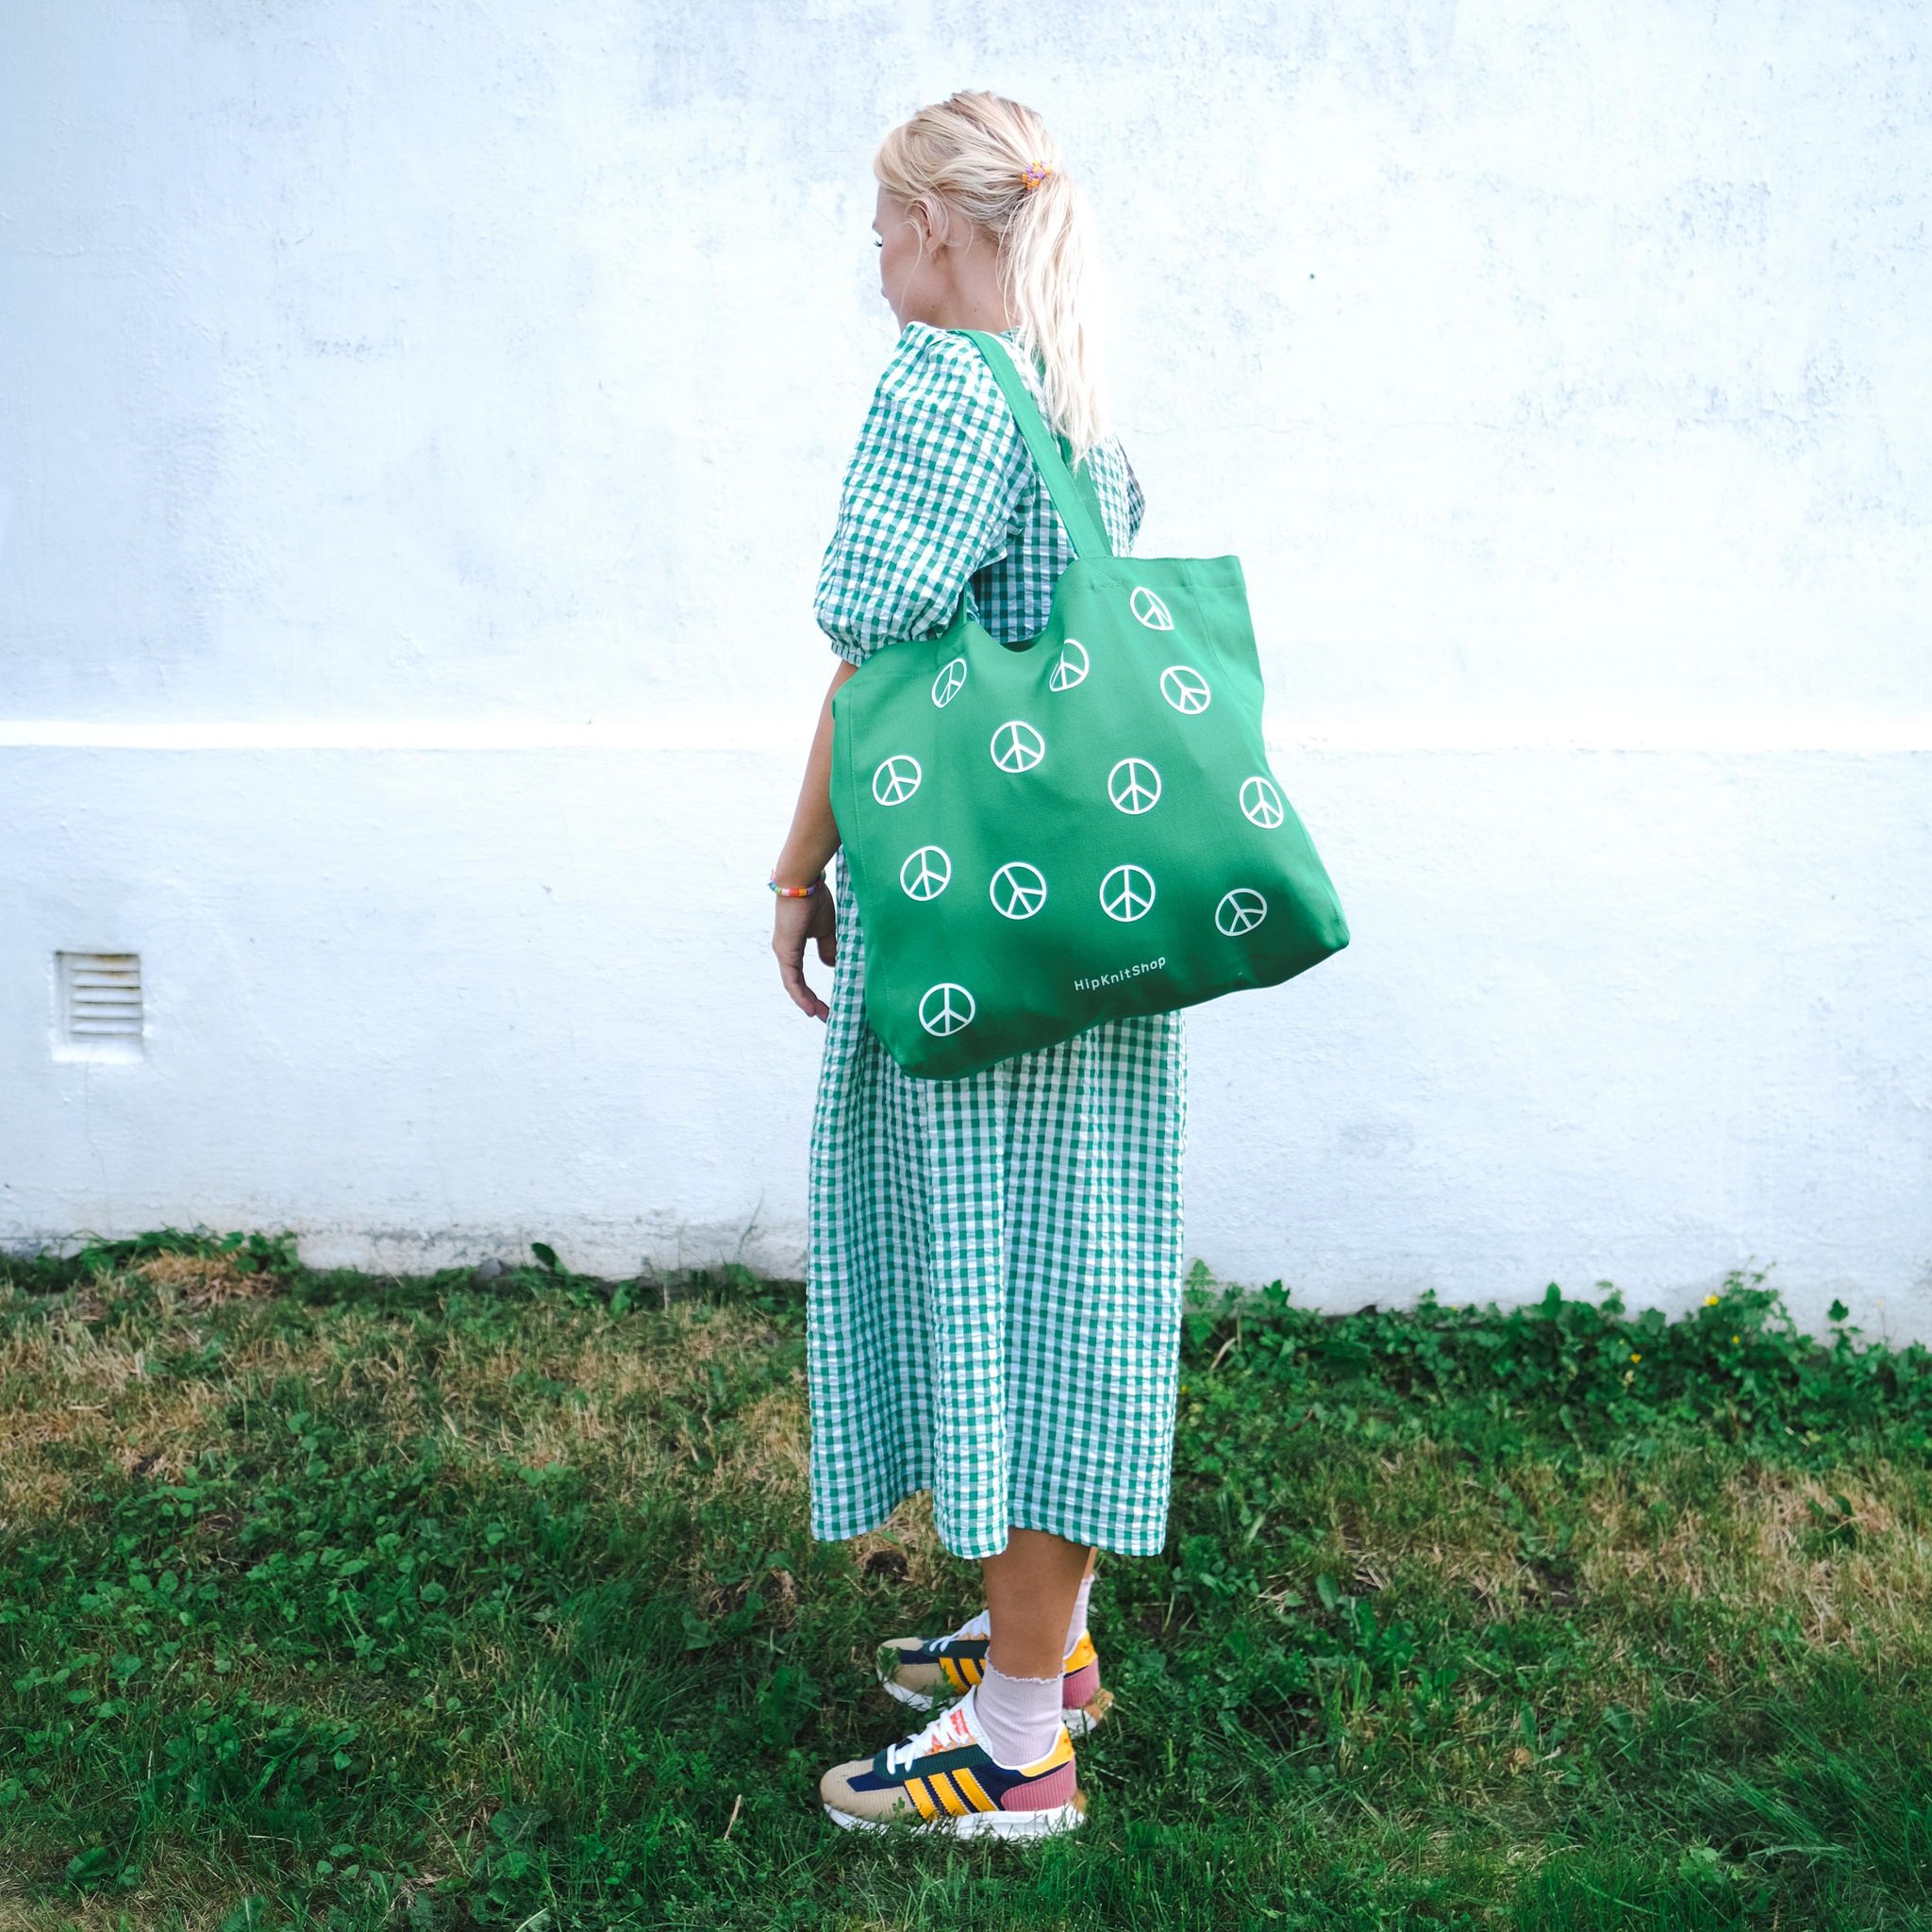  - I knit bag | Big storage bag | Project bag - by HipKnitShop - 11/07/2022